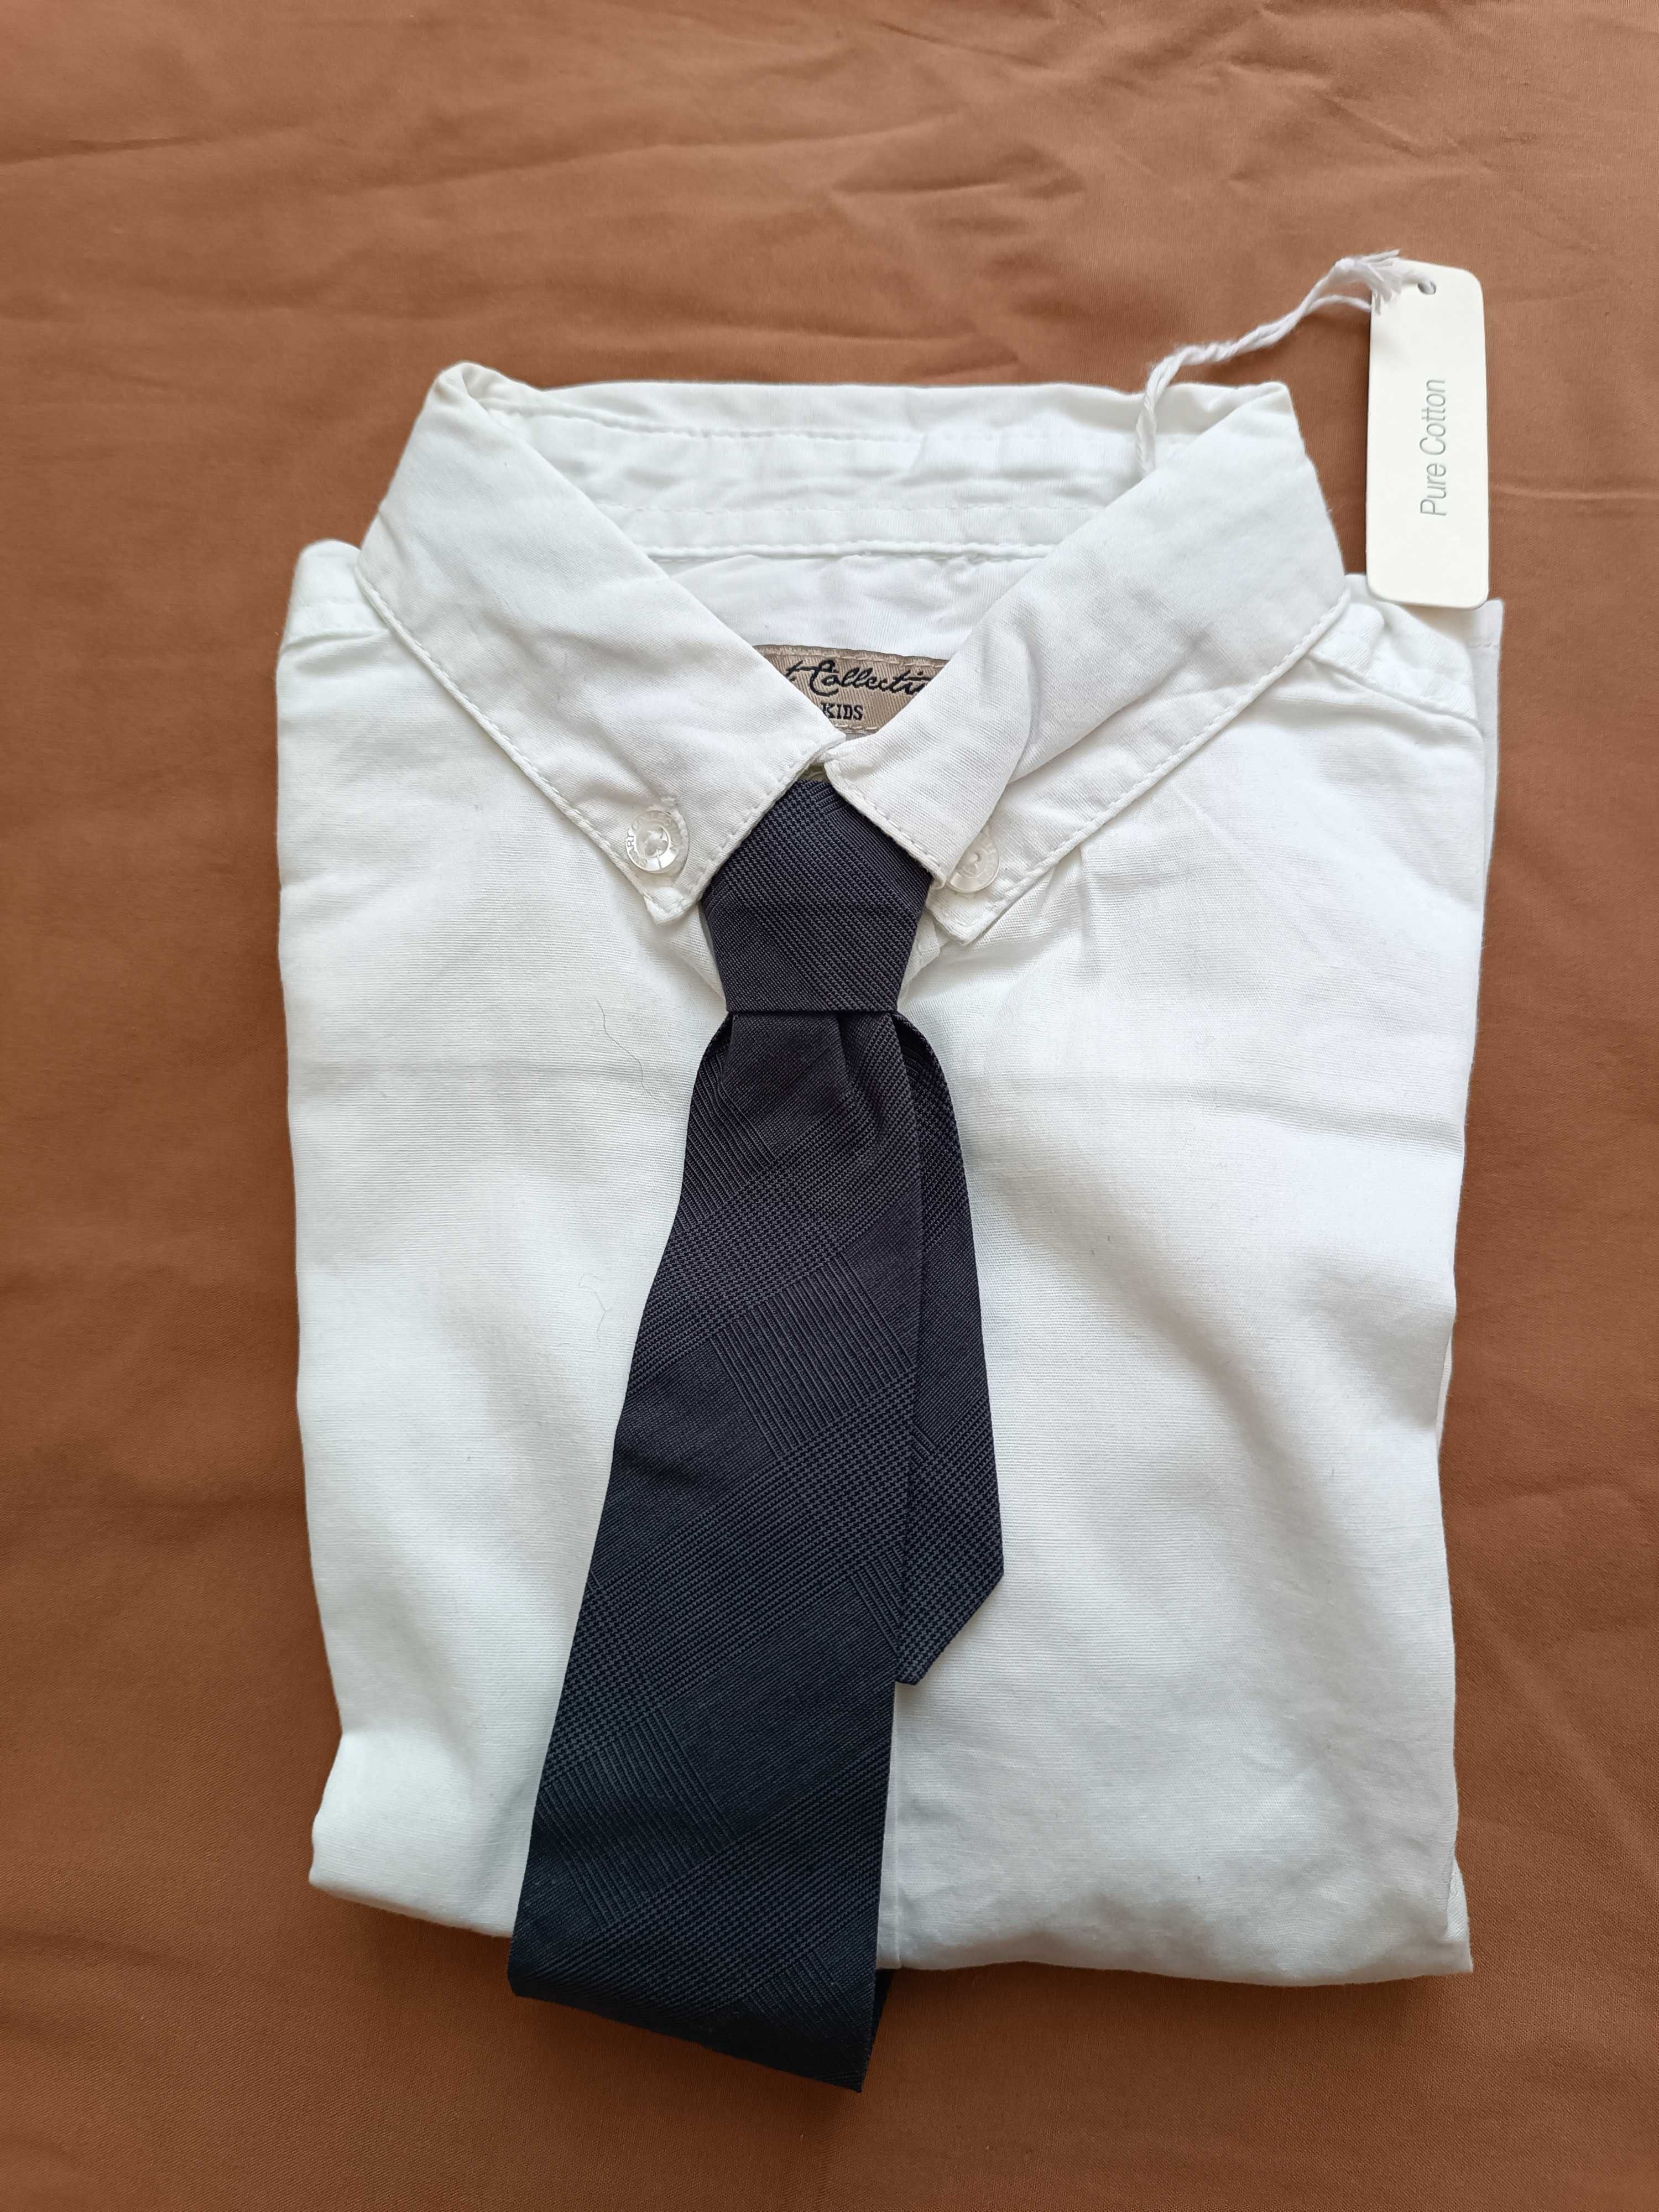 Camisa com gravata nova para criança